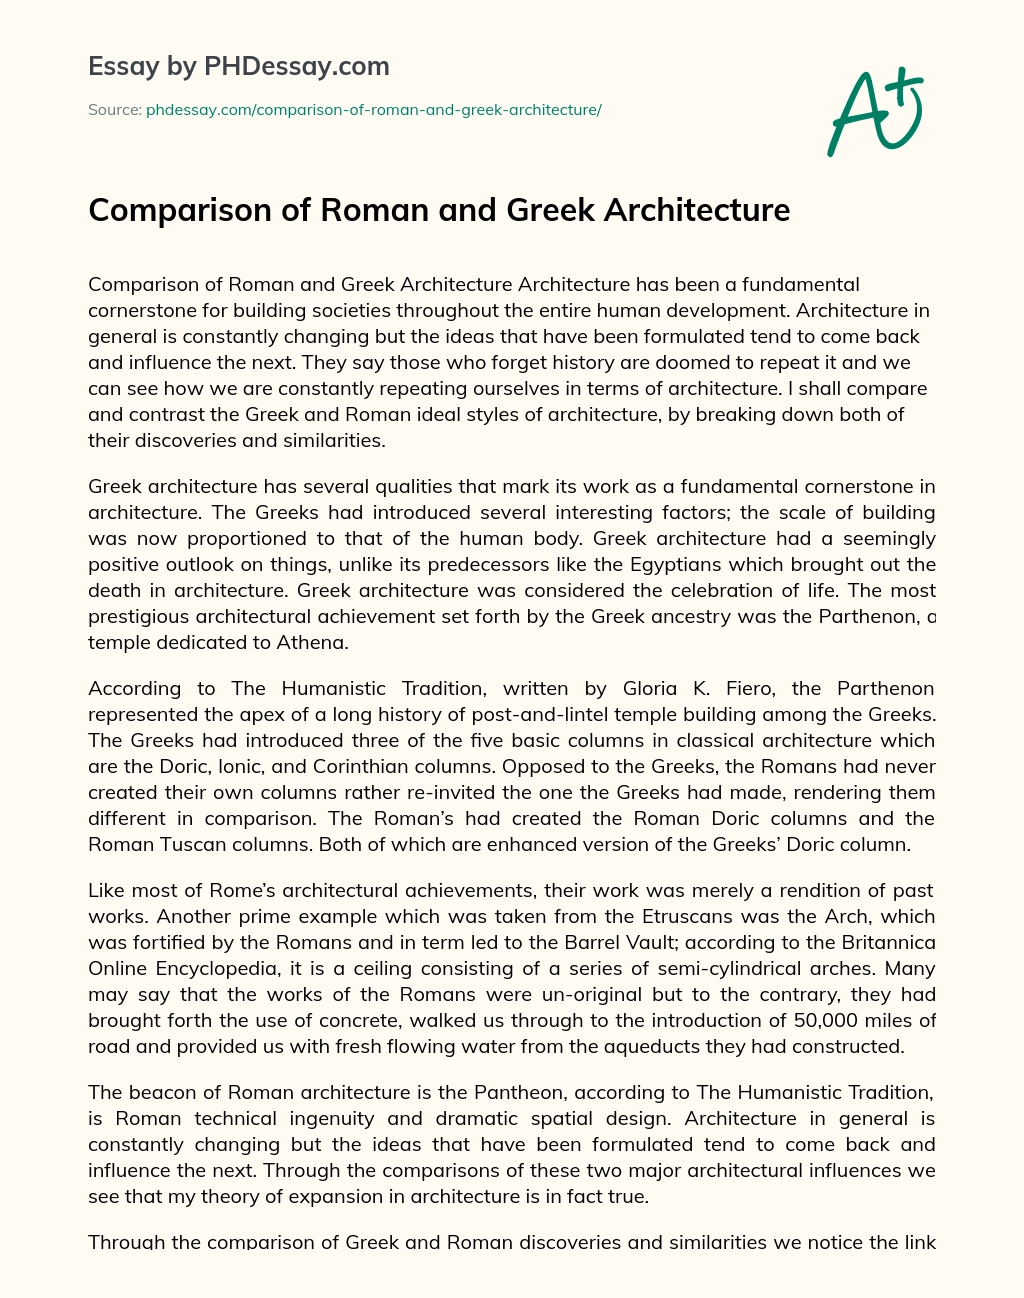 Comparison of Roman and Greek Architecture essay